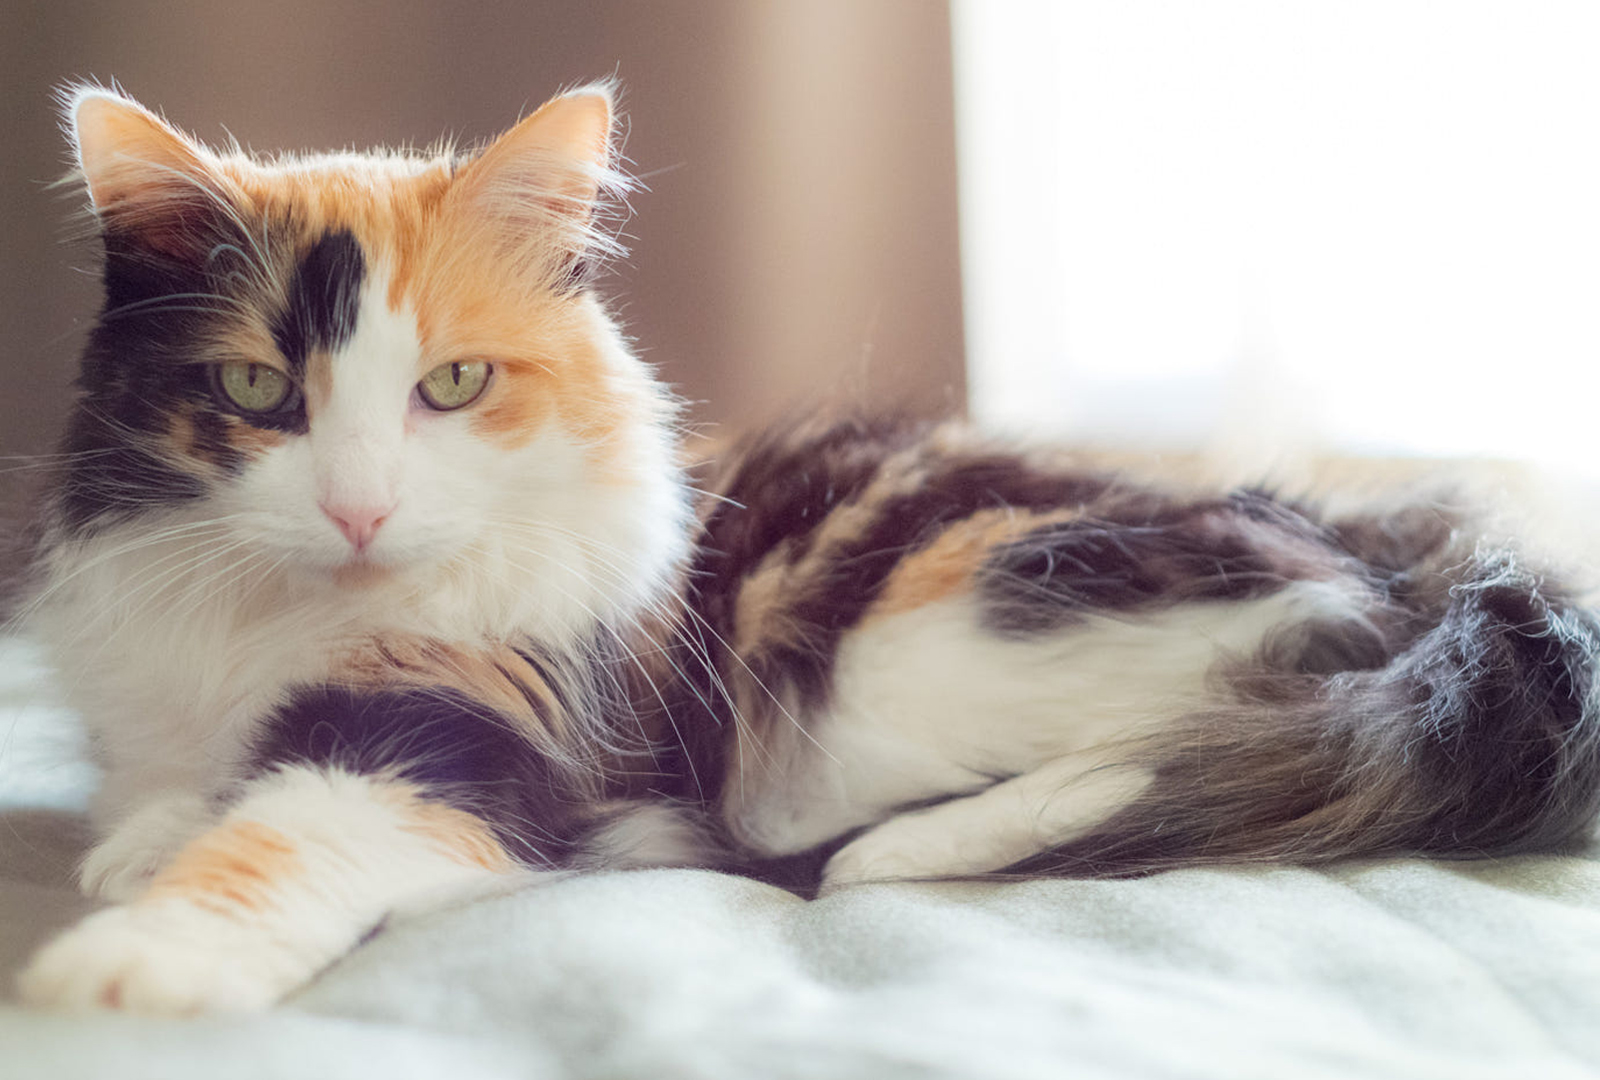 Mèo lông 3 màu (Three-Colored Cat): Chú mèo lông mịn màng và thu hút này được tạo nên từ ba màu sắc khác nhau trên cơ thể của nó. Bức ảnh này sẽ khiến bạn muốn sờ vào bộ lông mềm mại và cảm nhận tình cảm của chú mèo này.